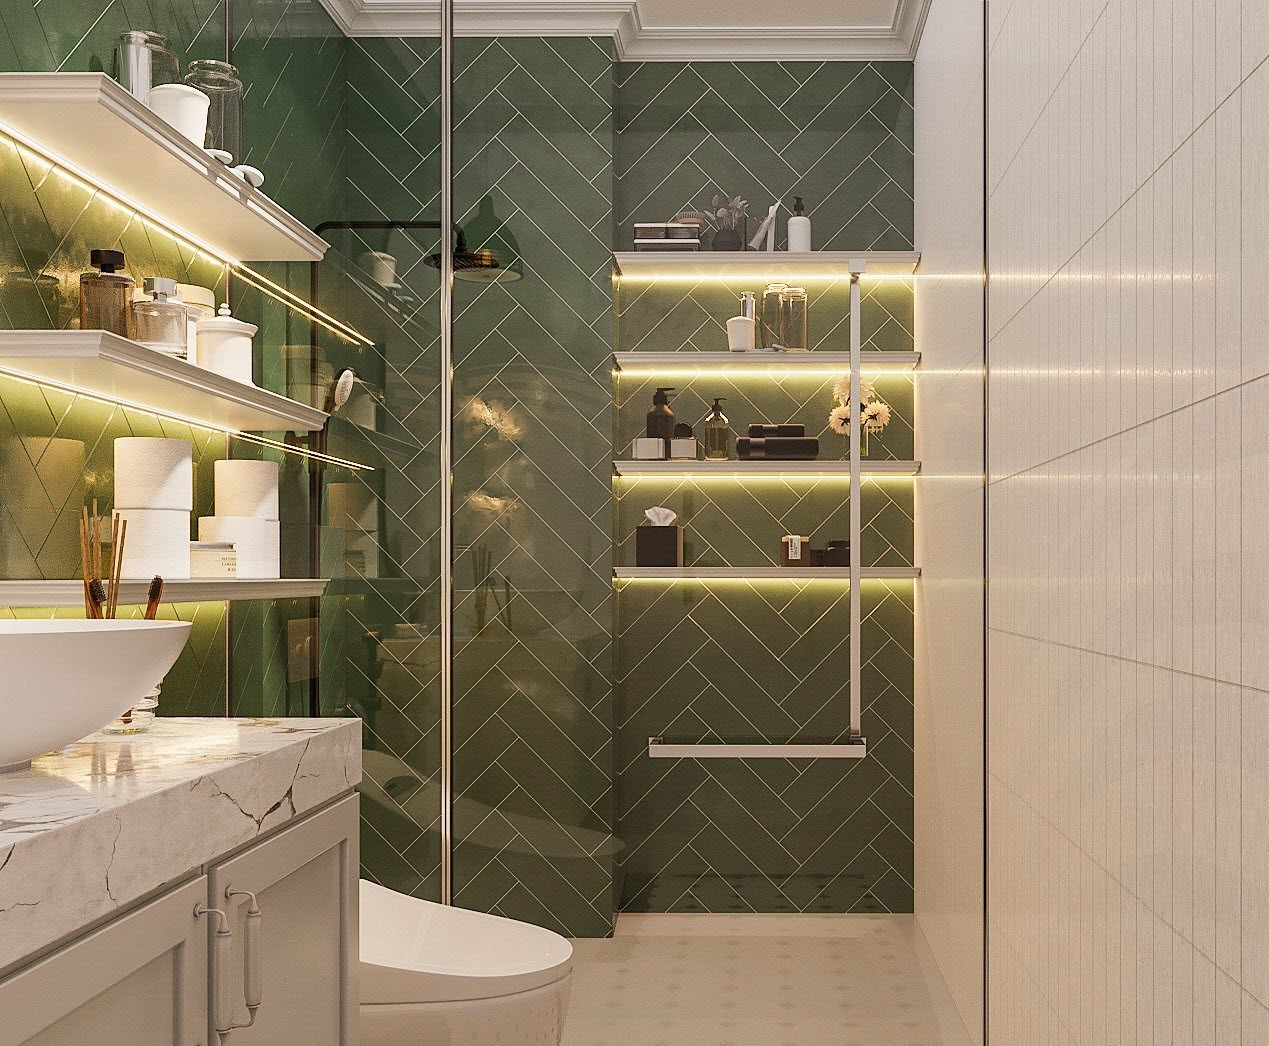 Phòng vệ sinh sang trọng với gạch ốp tường trắng - xanh lá xen kẽ tinh tế.